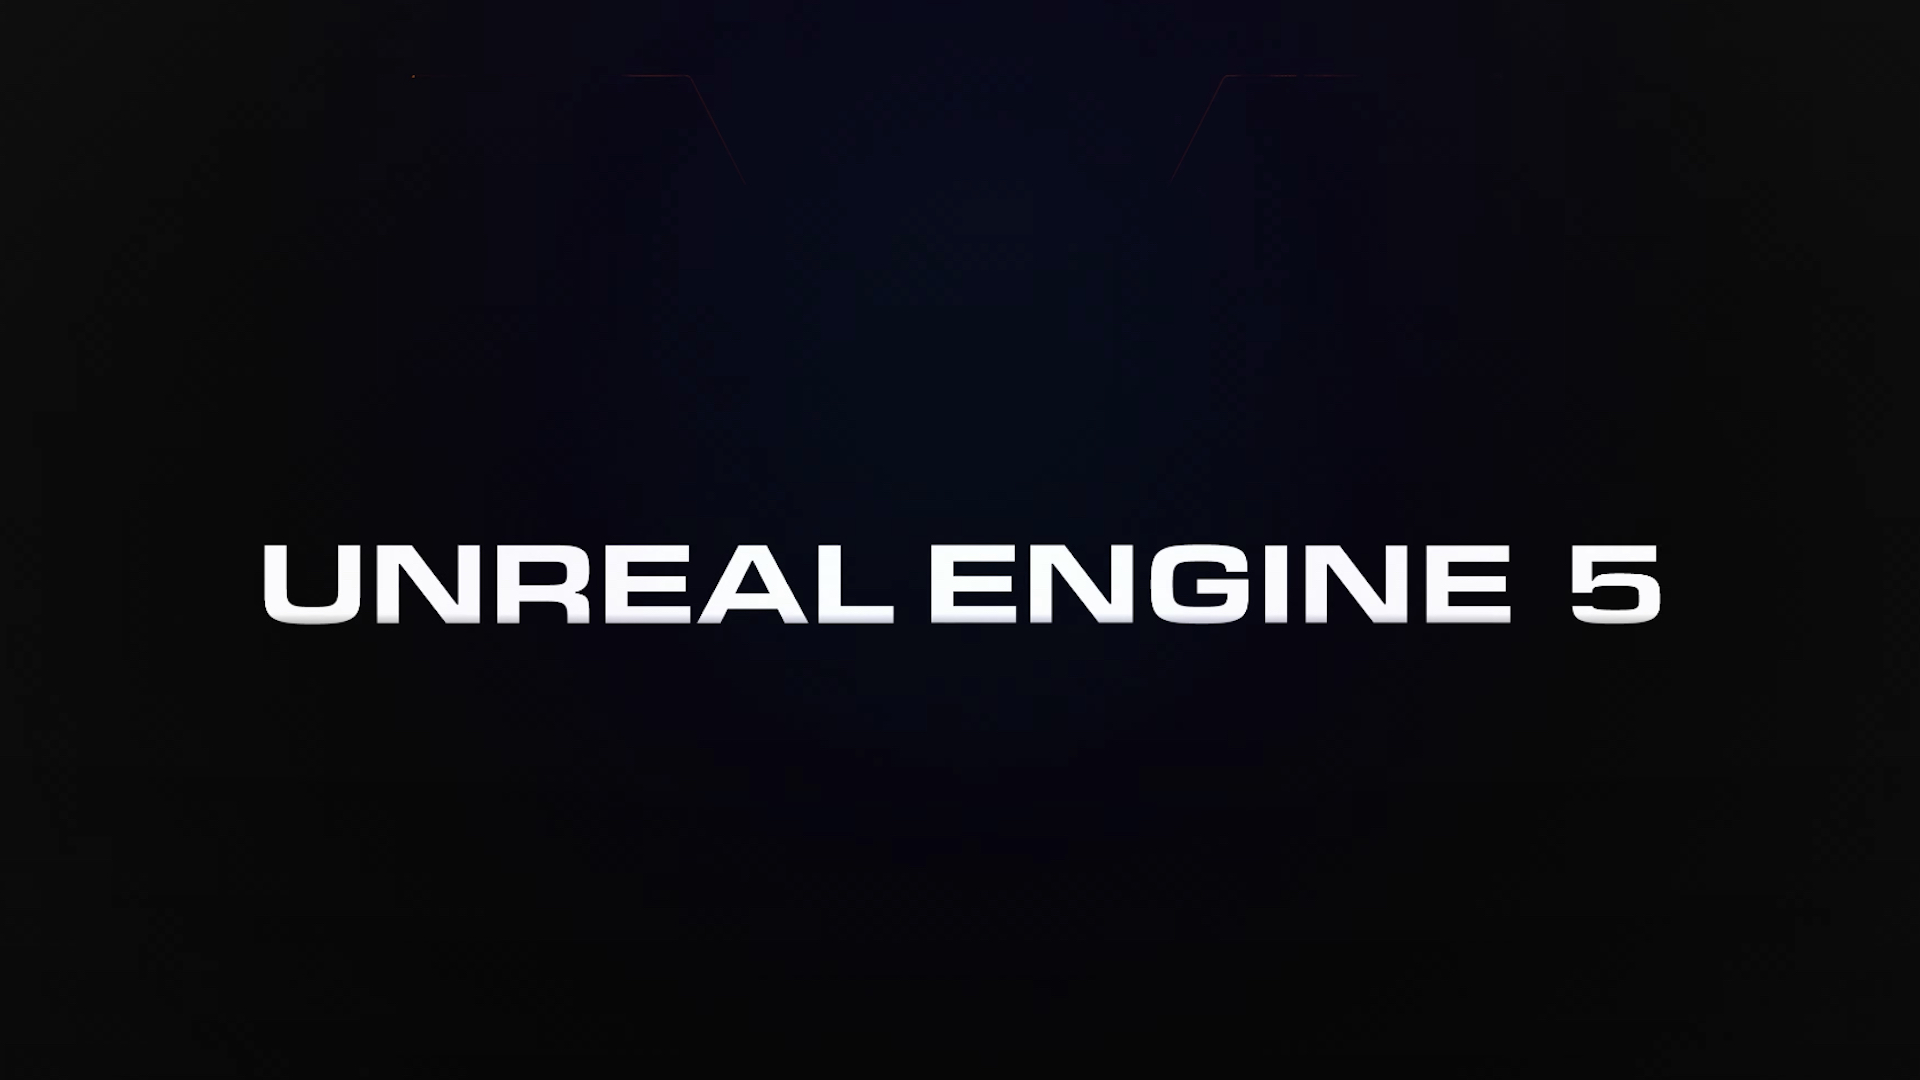 دمو تکنیکی موتور Unreal Engine 5 از تکنیک پنهان کردن بارگذاری استفاده نکرده بود